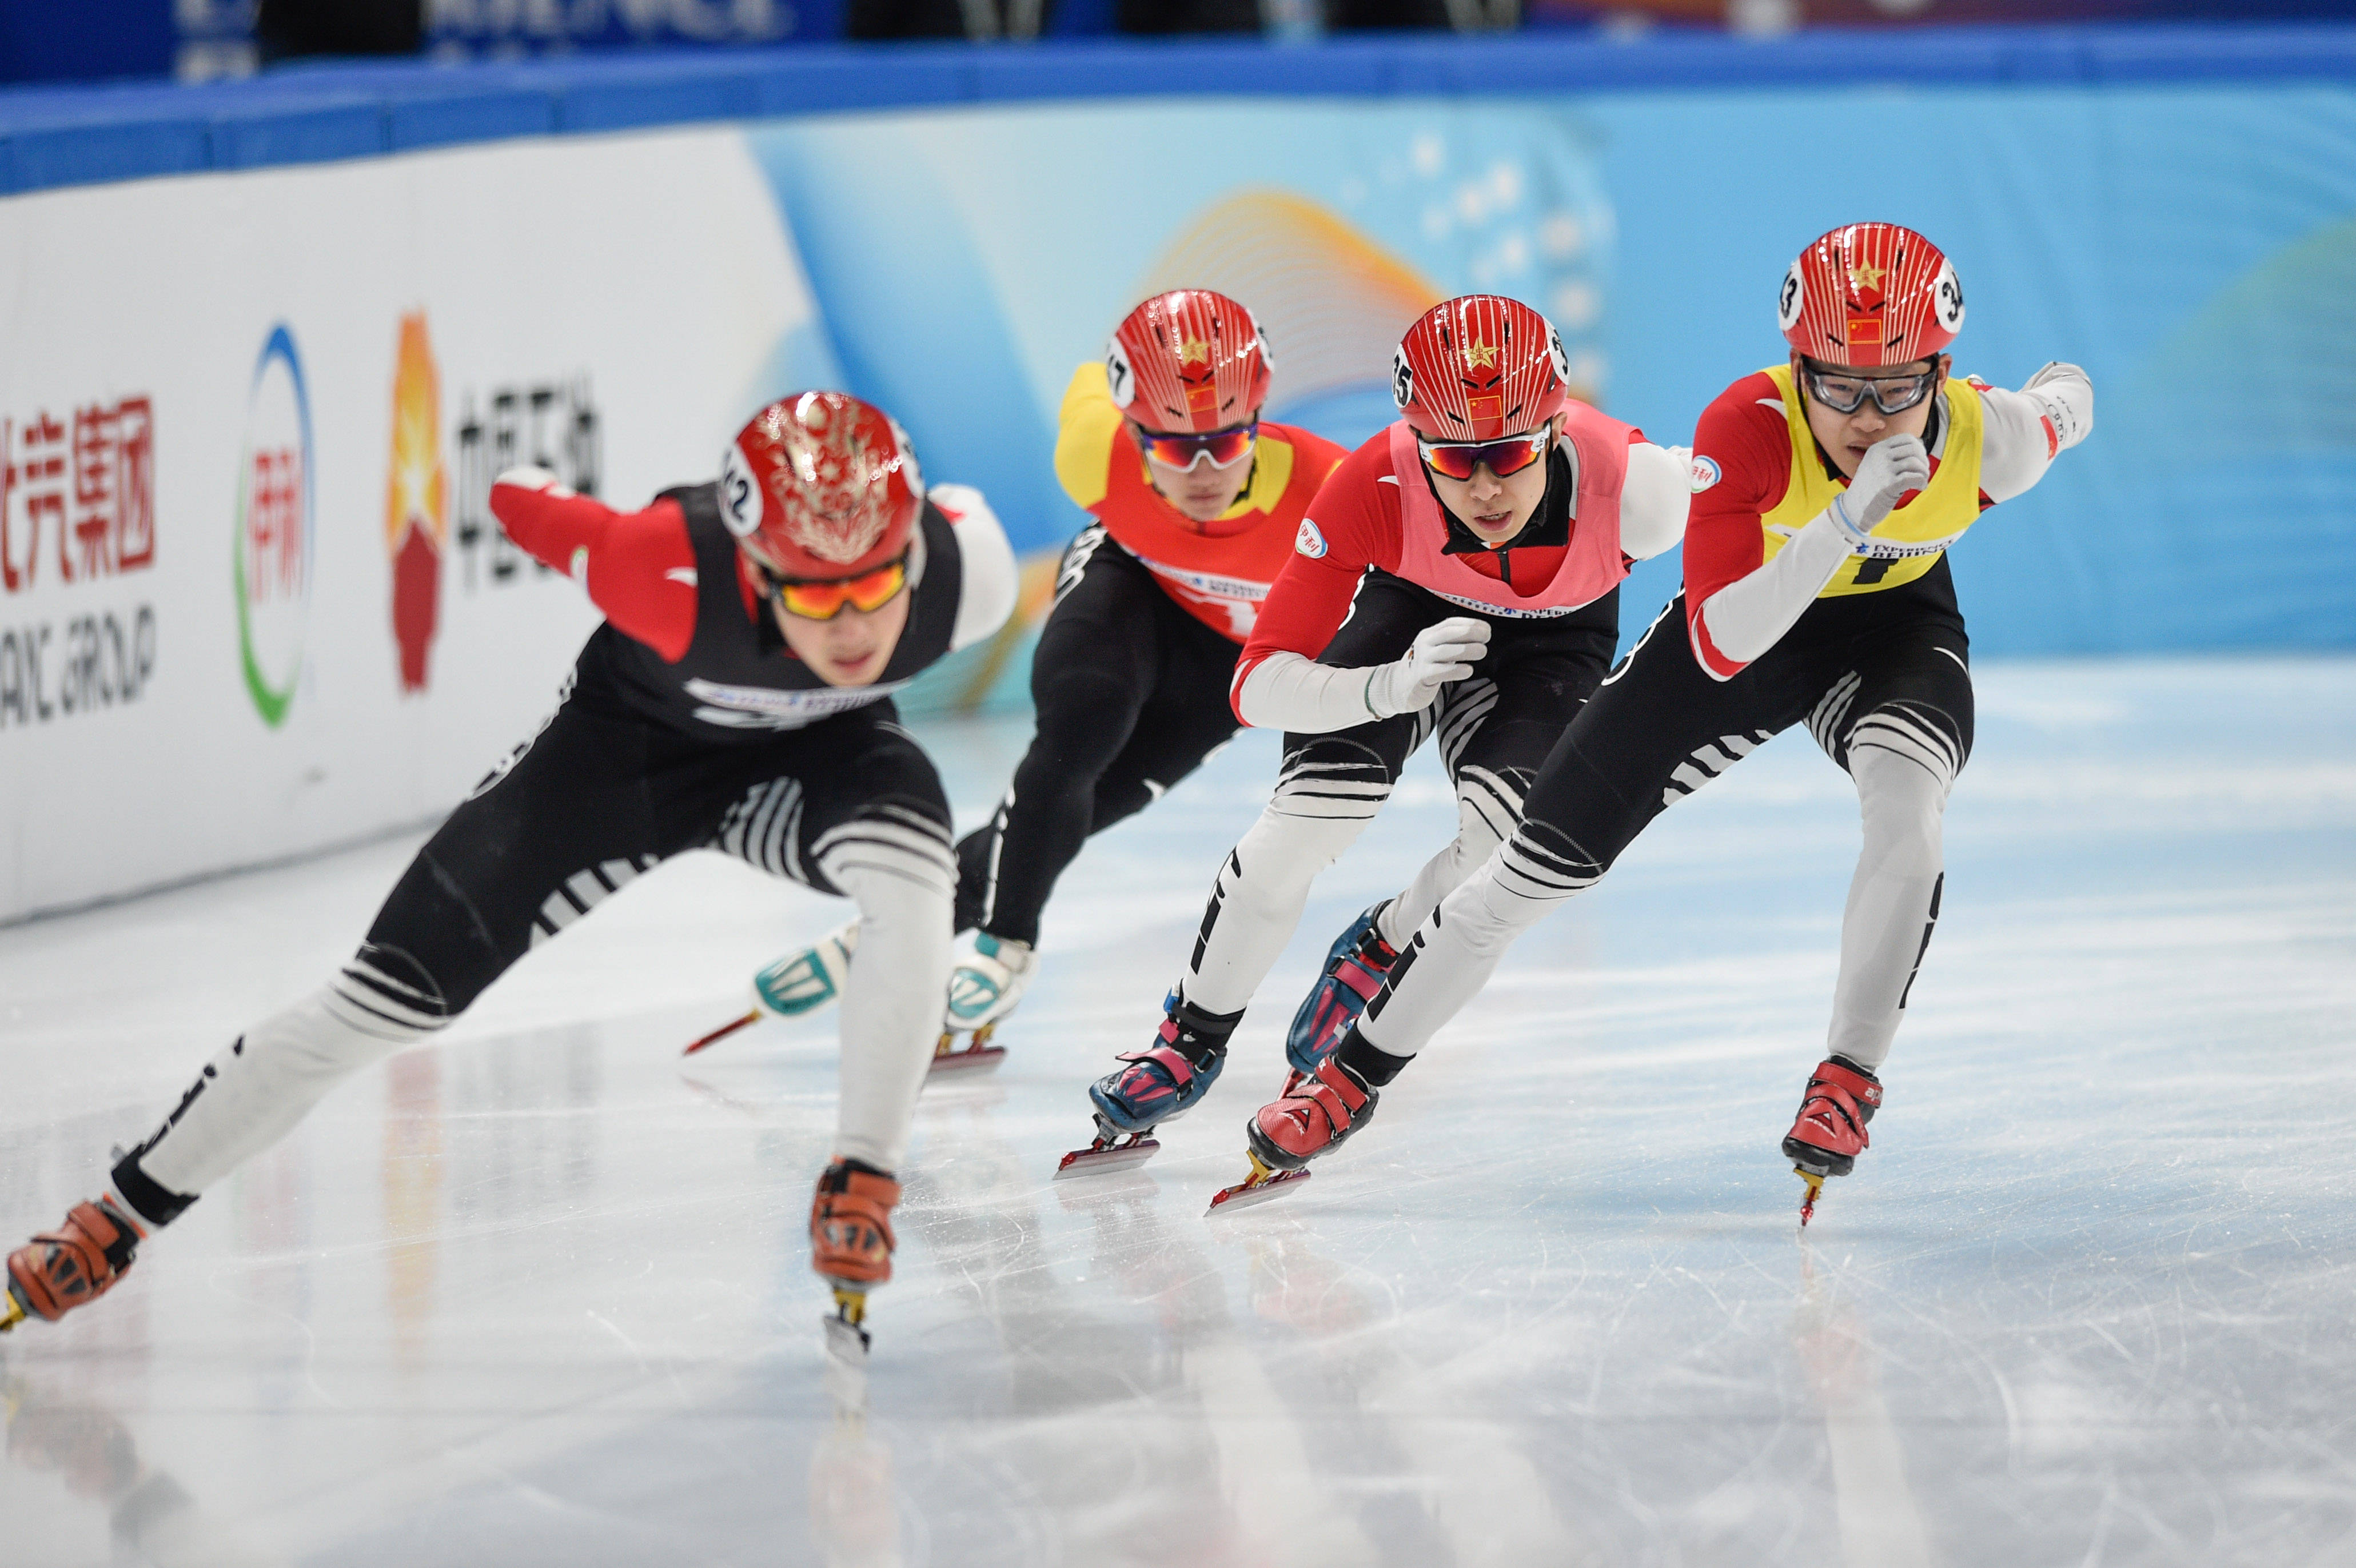 短道速滑相约北京冰上测试活动短道速滑比赛落幕